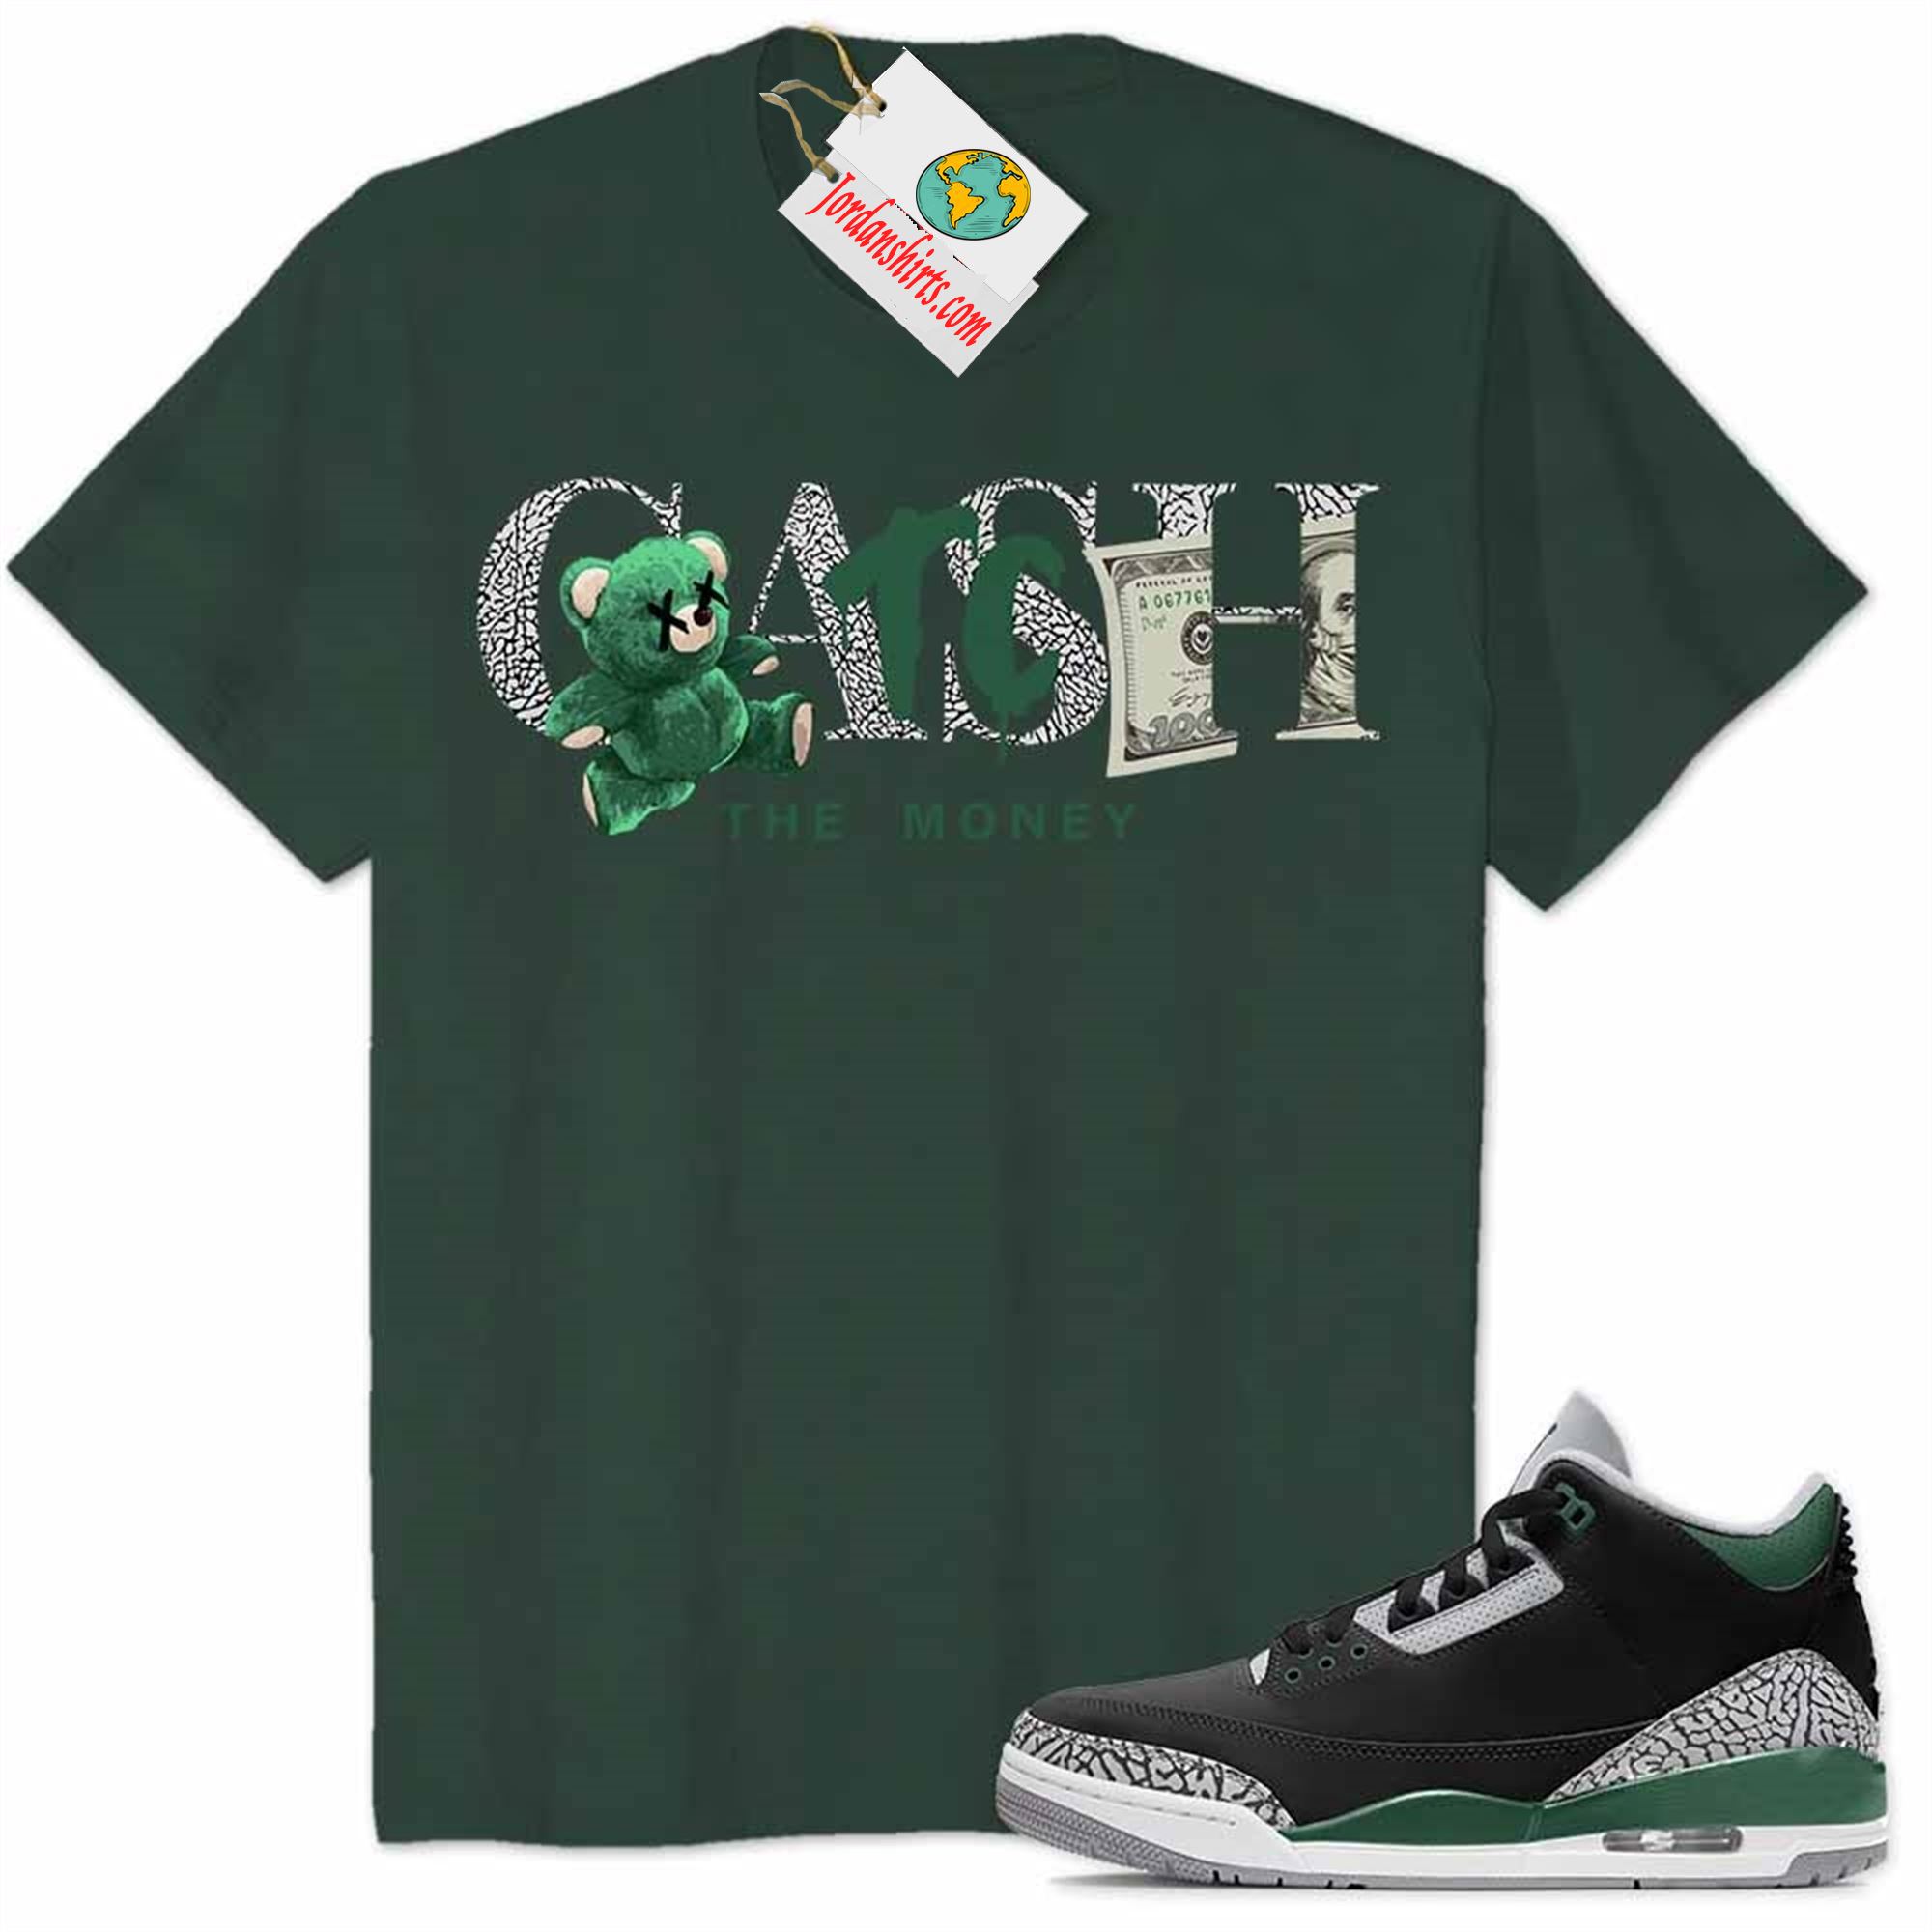 Jordan 3 Shirt, Cash Catch The Money Teddy Bear Forest Air Jordan 3 Pine Green 3s Plus Size Up To 5xl